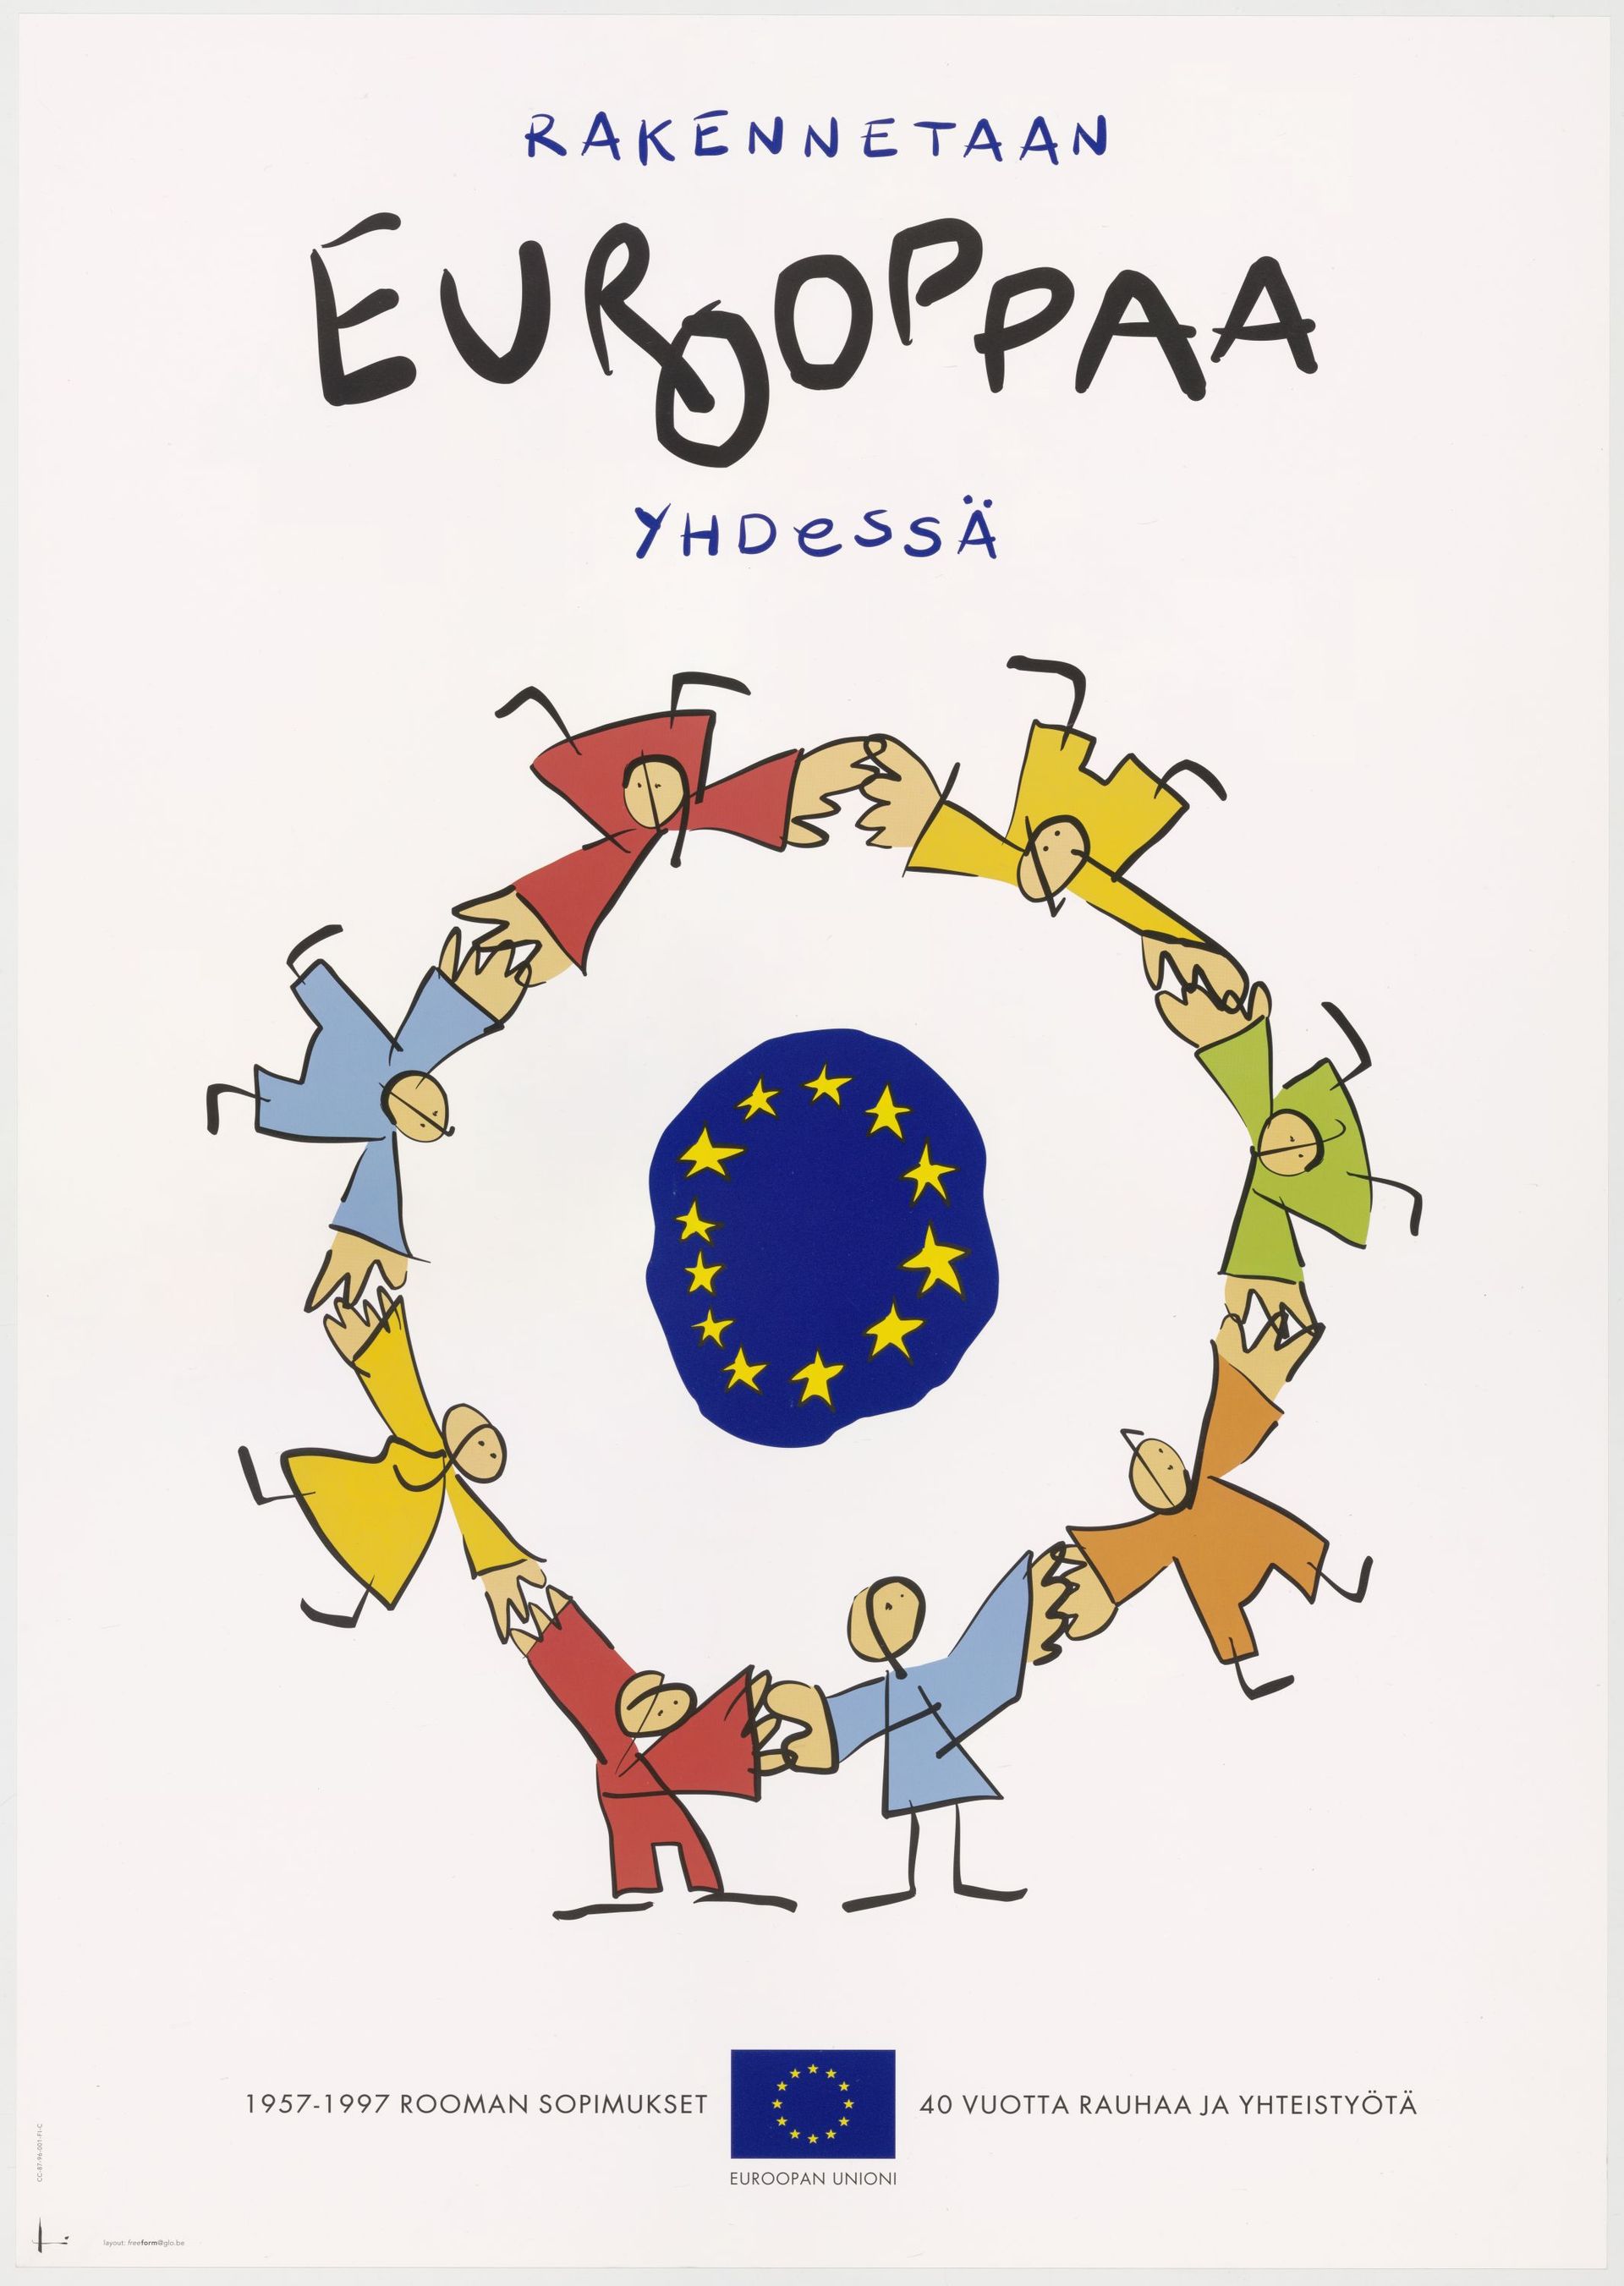 Construire l'Europe ensemble, affiche pour les 40 ans du Traité de Rome -  Belgique, 1997

